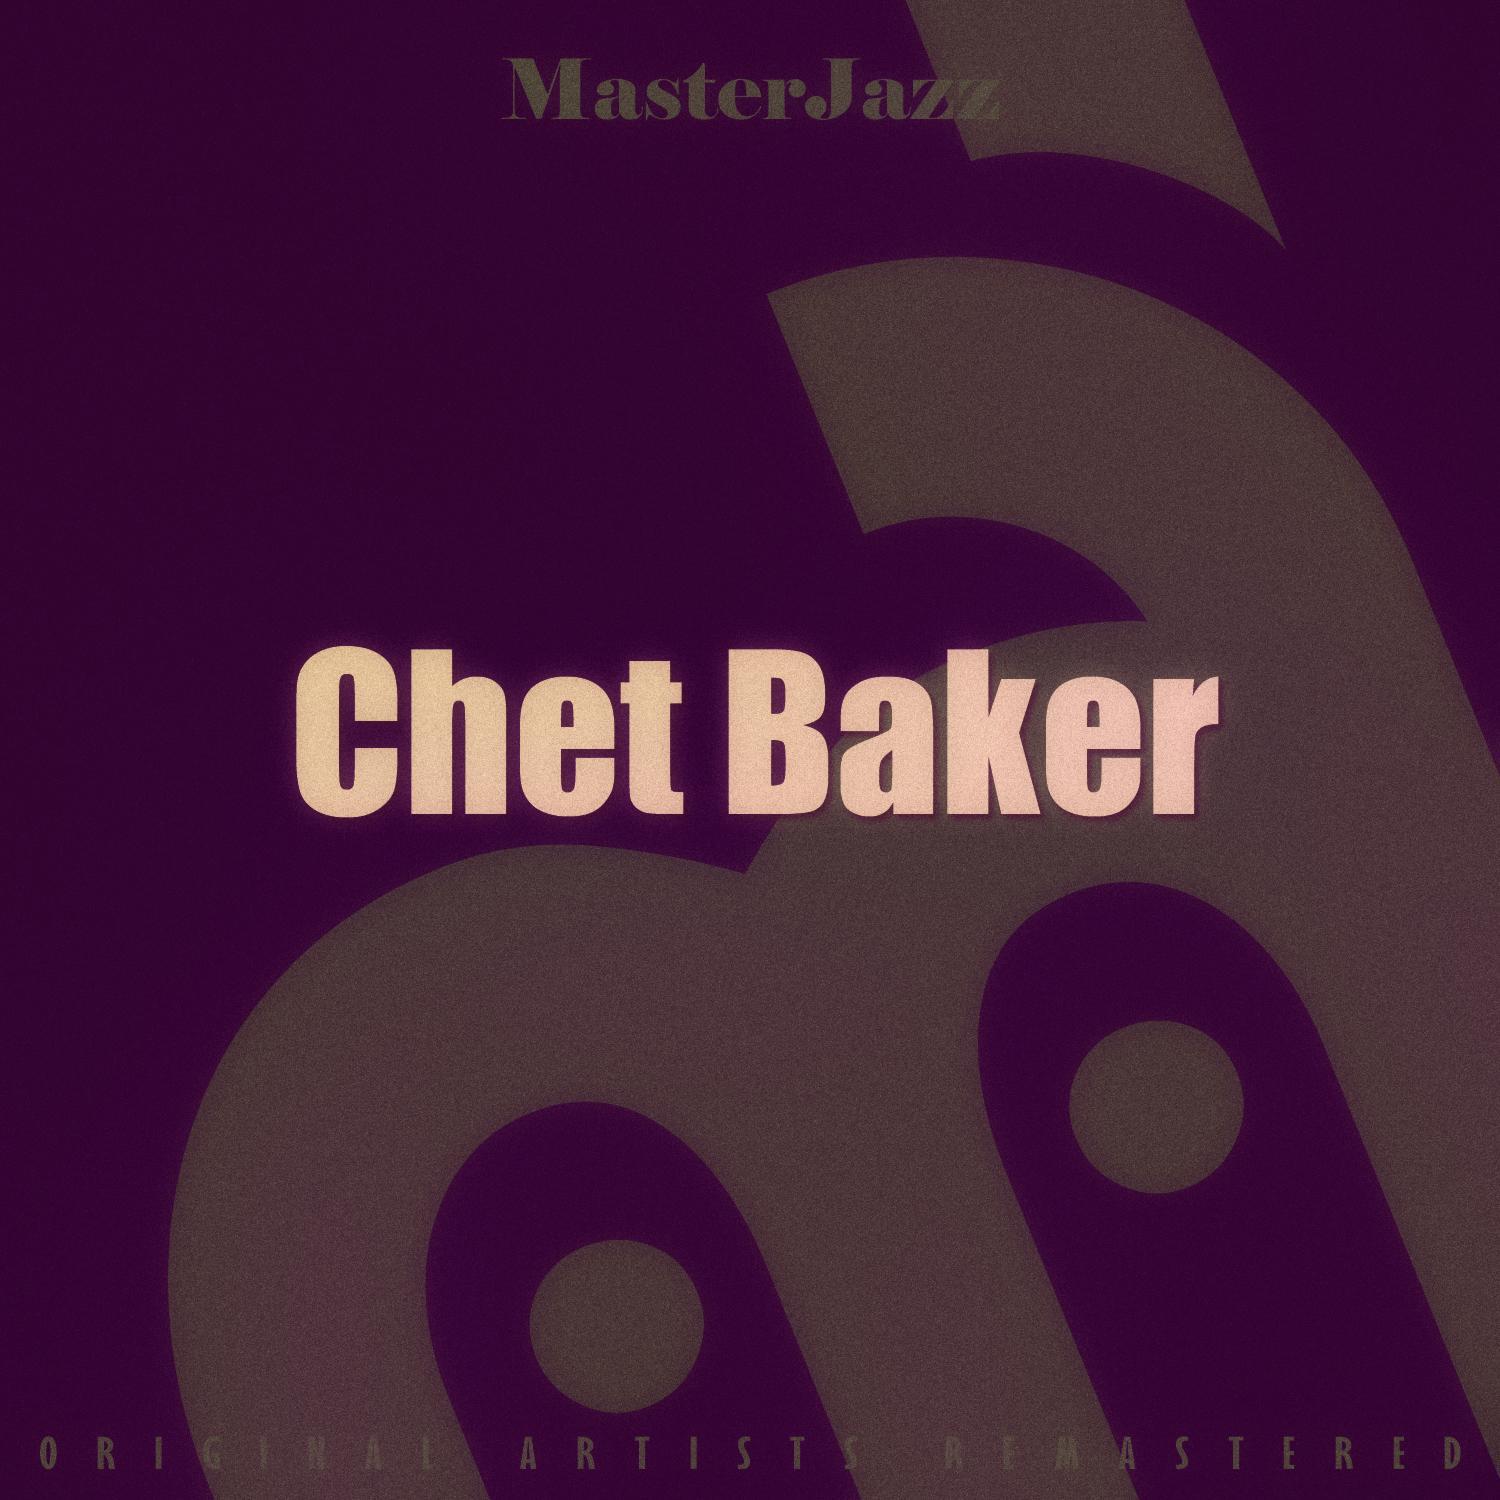 Masterjazz: Chet Baker专辑